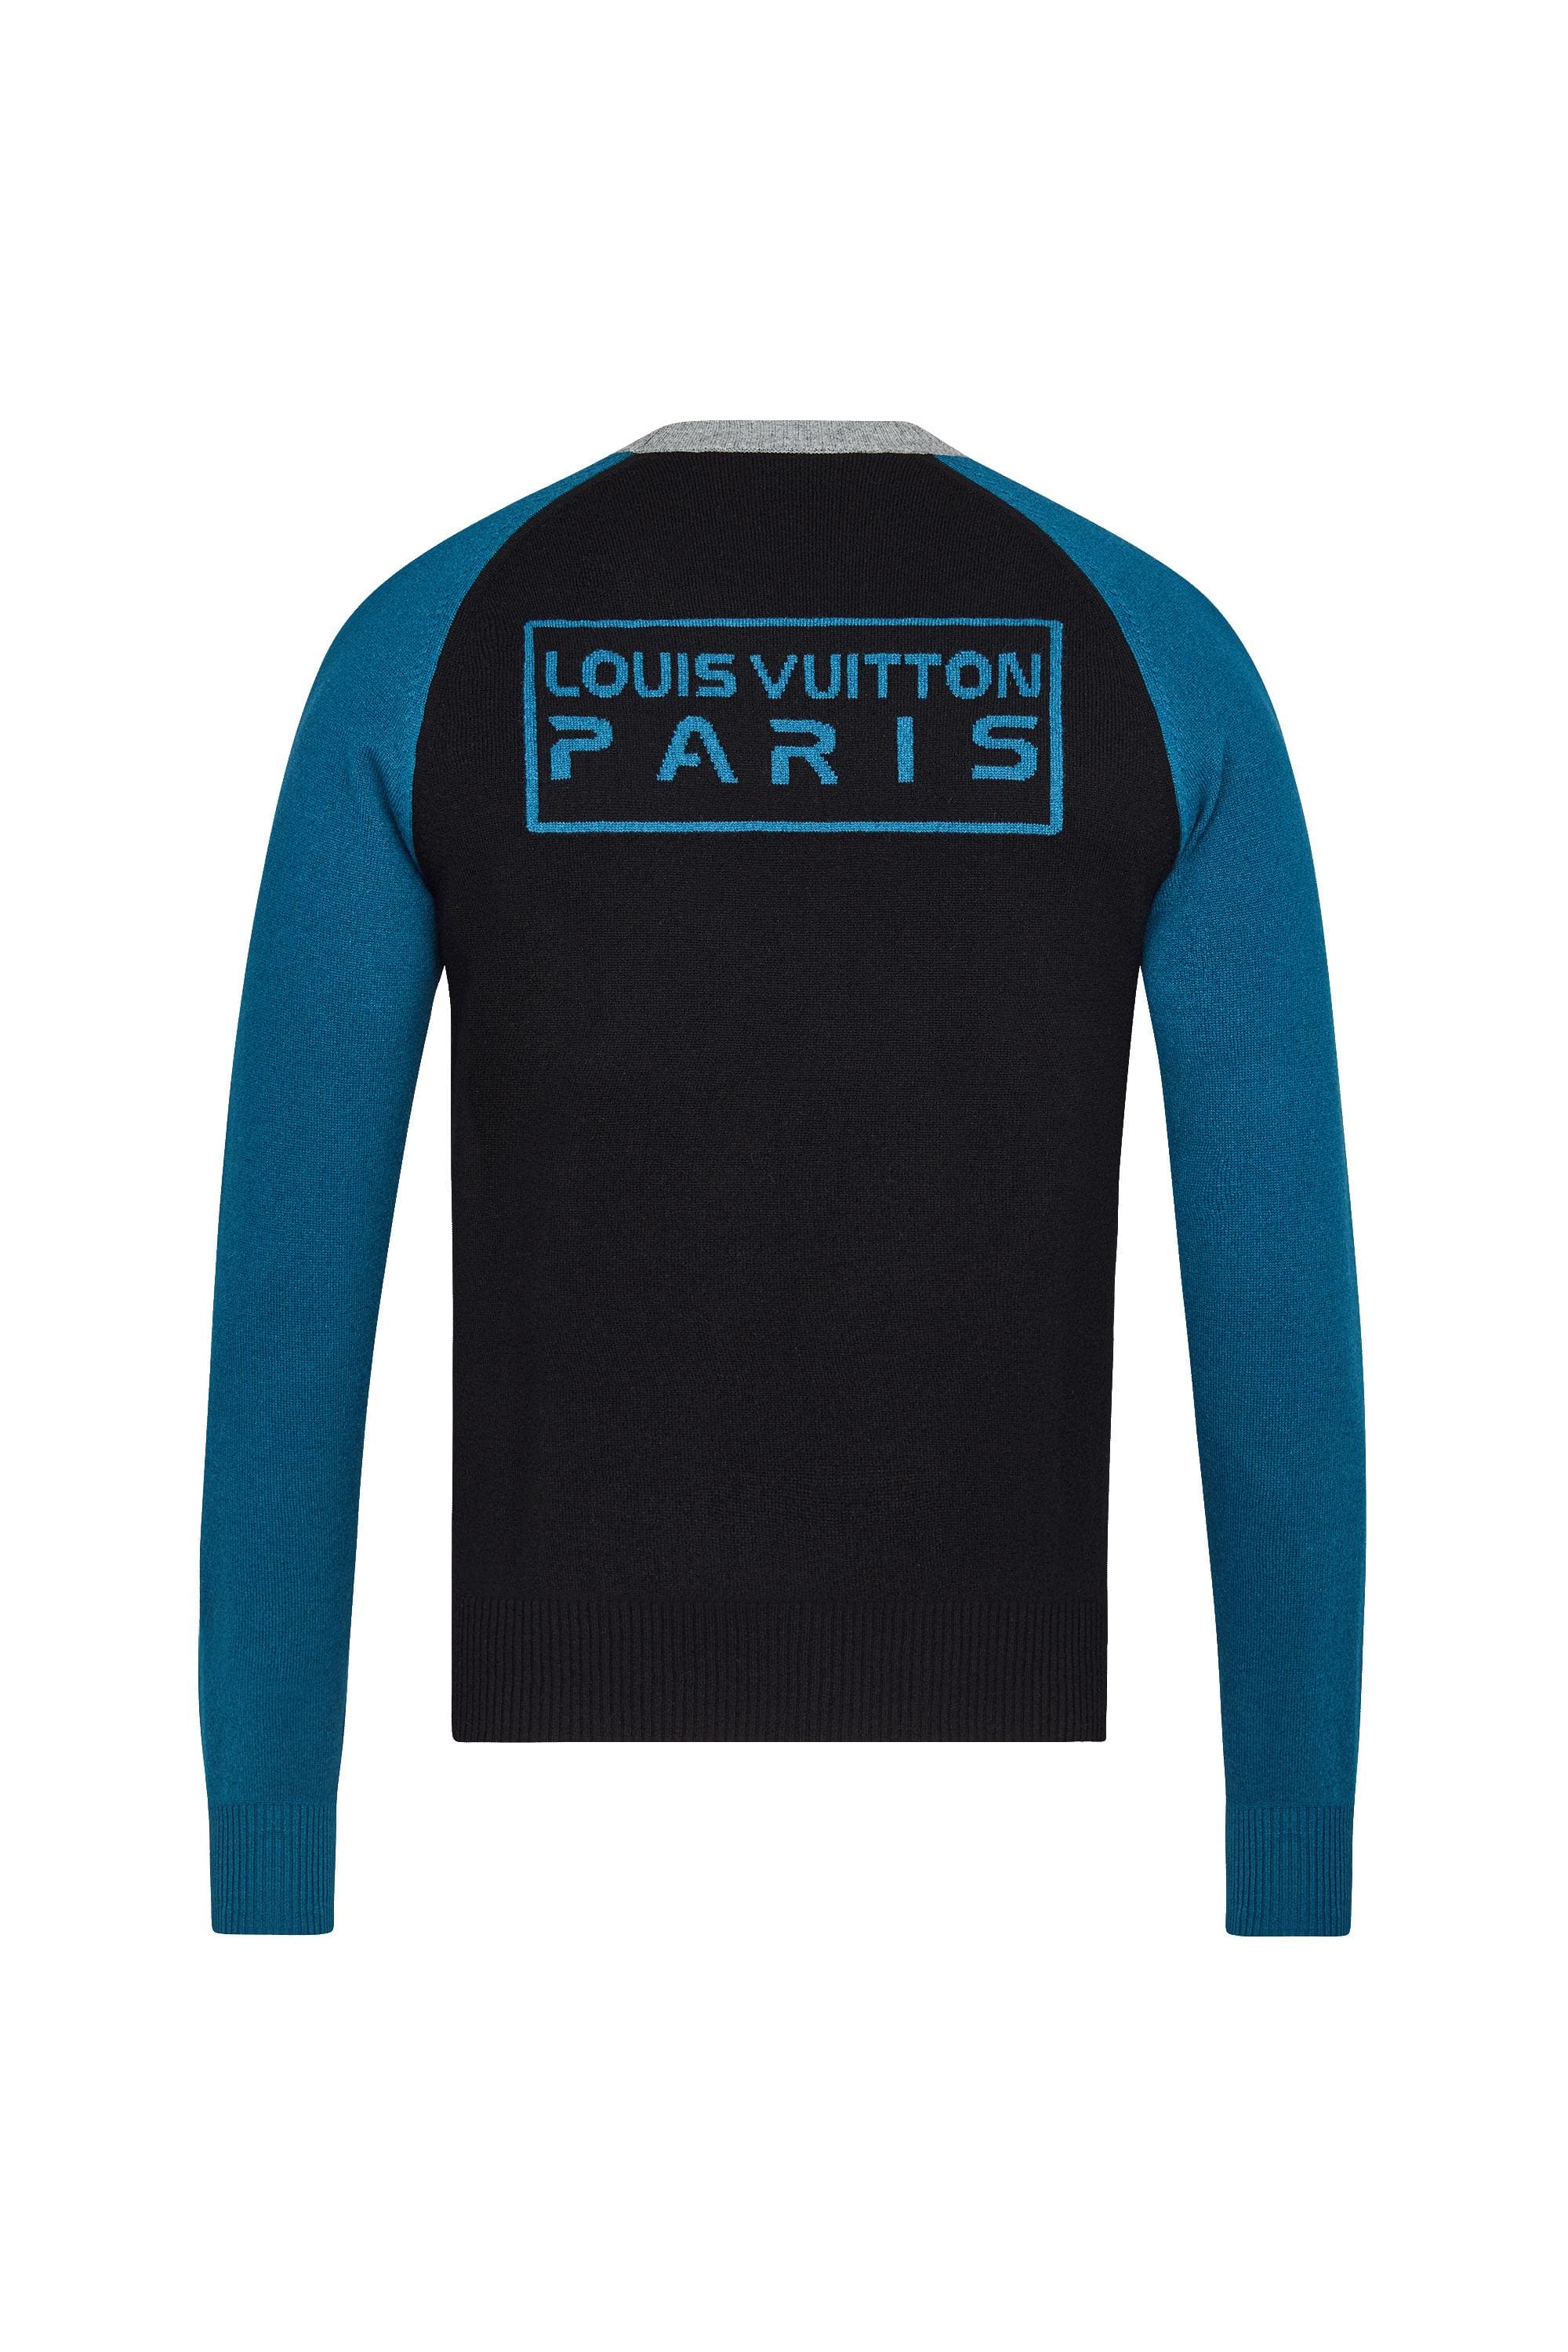 Louis Vuitton Color Logo - Color Block Logo Crew Neck to Wear